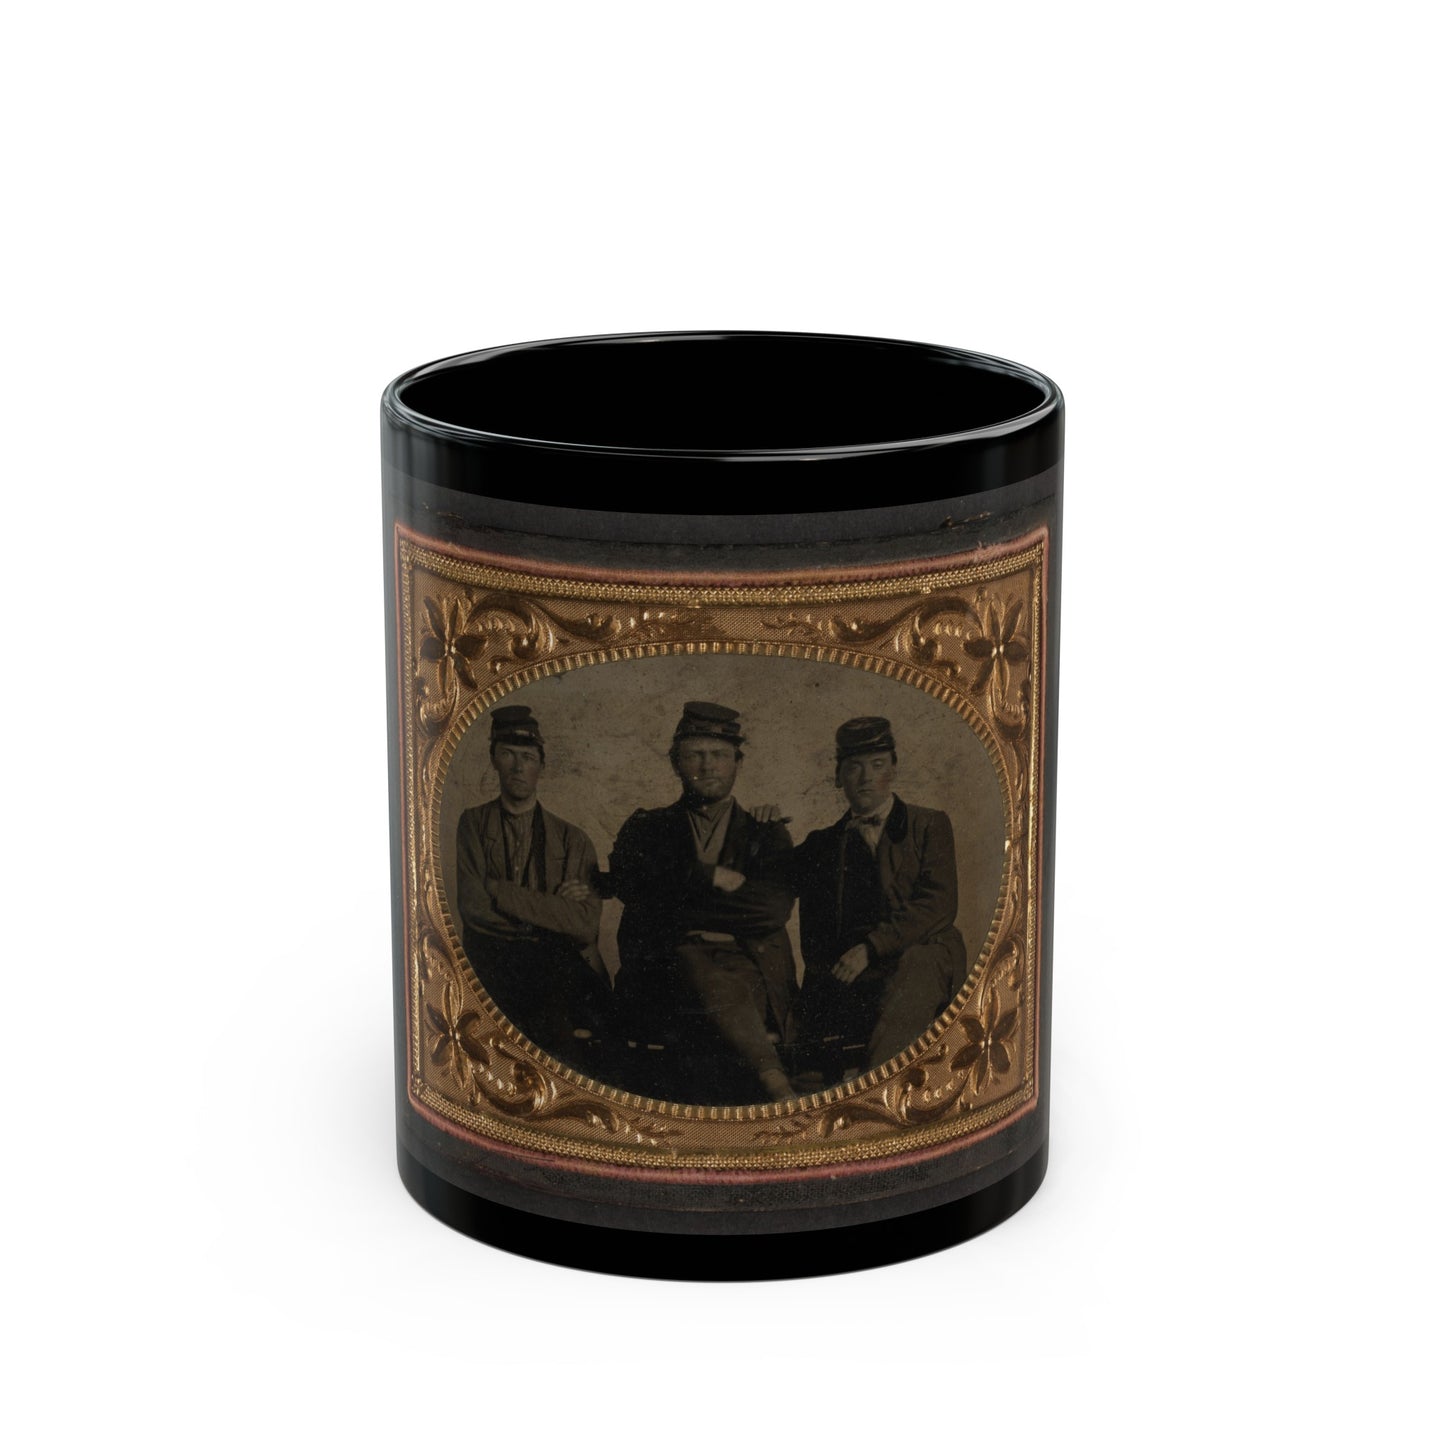 Three Unidentified Soldiers (U.S. Civil War) Black Coffee Mug